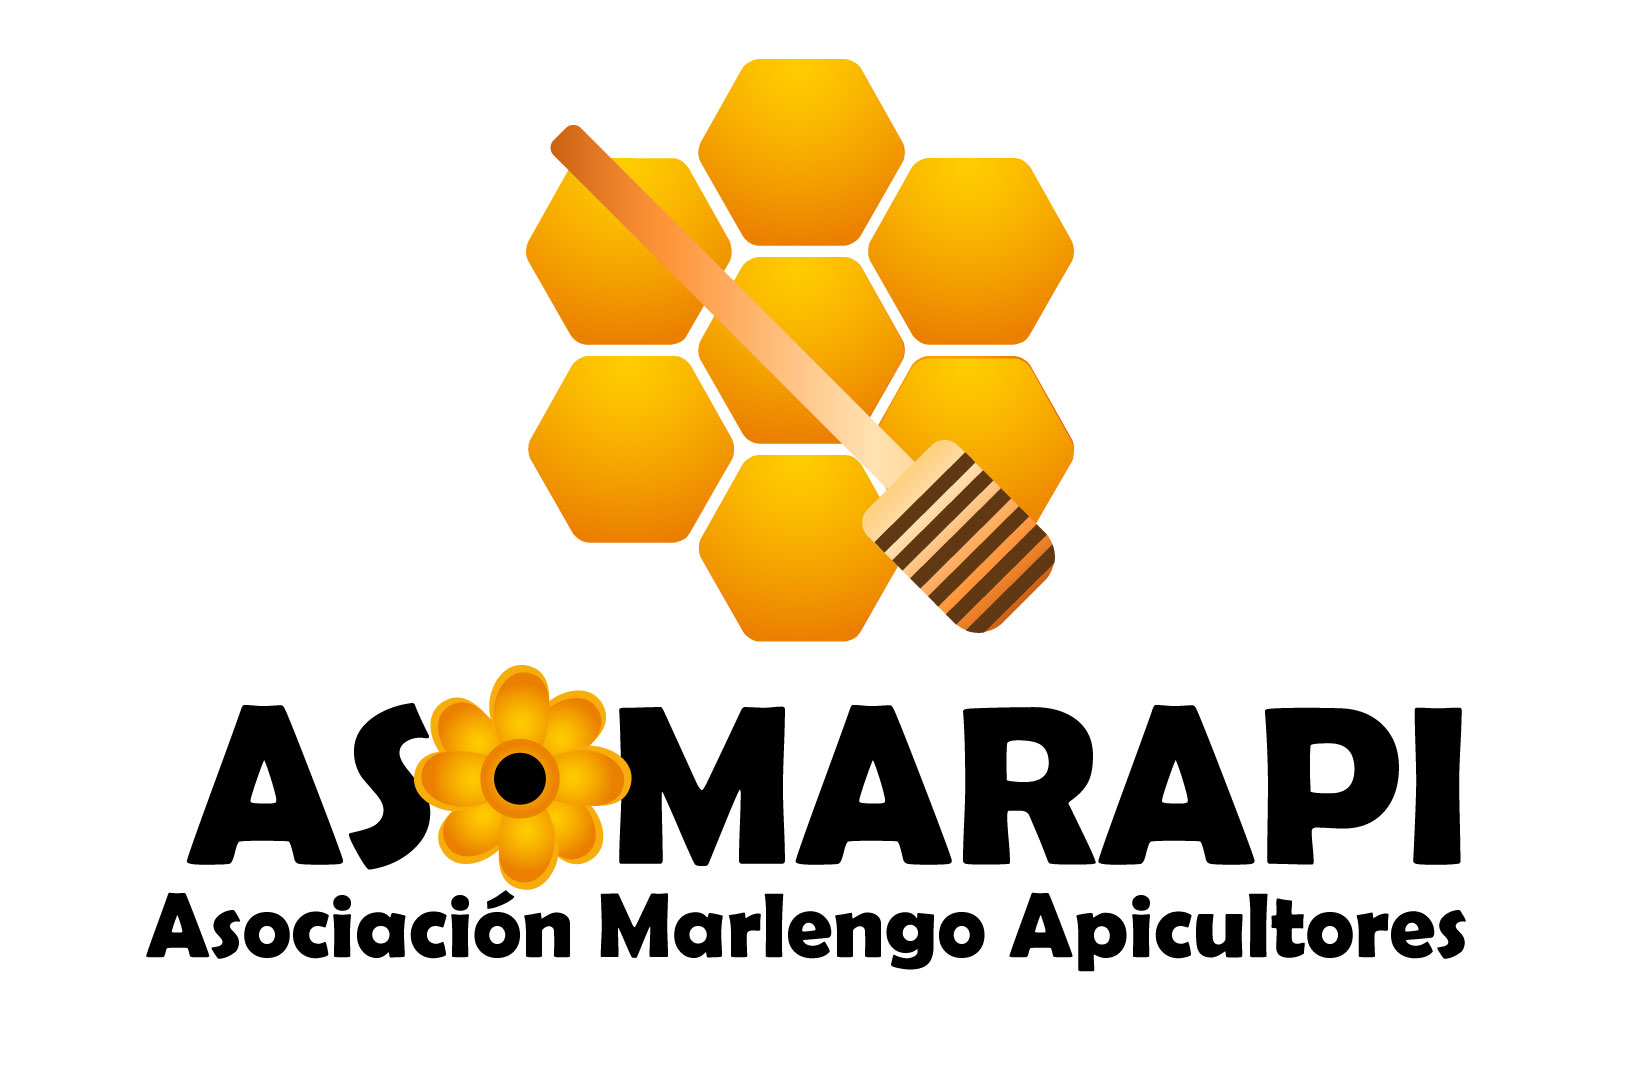 ASOMARAPI, es una organización solidaria del municipio de Cáceres ubicada en el corregimiento de Marlengo, la cual se dedica a la fabricación y comercialización de productos derivados de la miel. Esta asociación de apicultores se constituye el 24 de octubre del 2019, comprometiéndose  con el objetivo de concientizar a la comunidad  sobre la importancia que cumplen las abejas dentro del ecosistema  y los peligros a los que se enfrentan. 